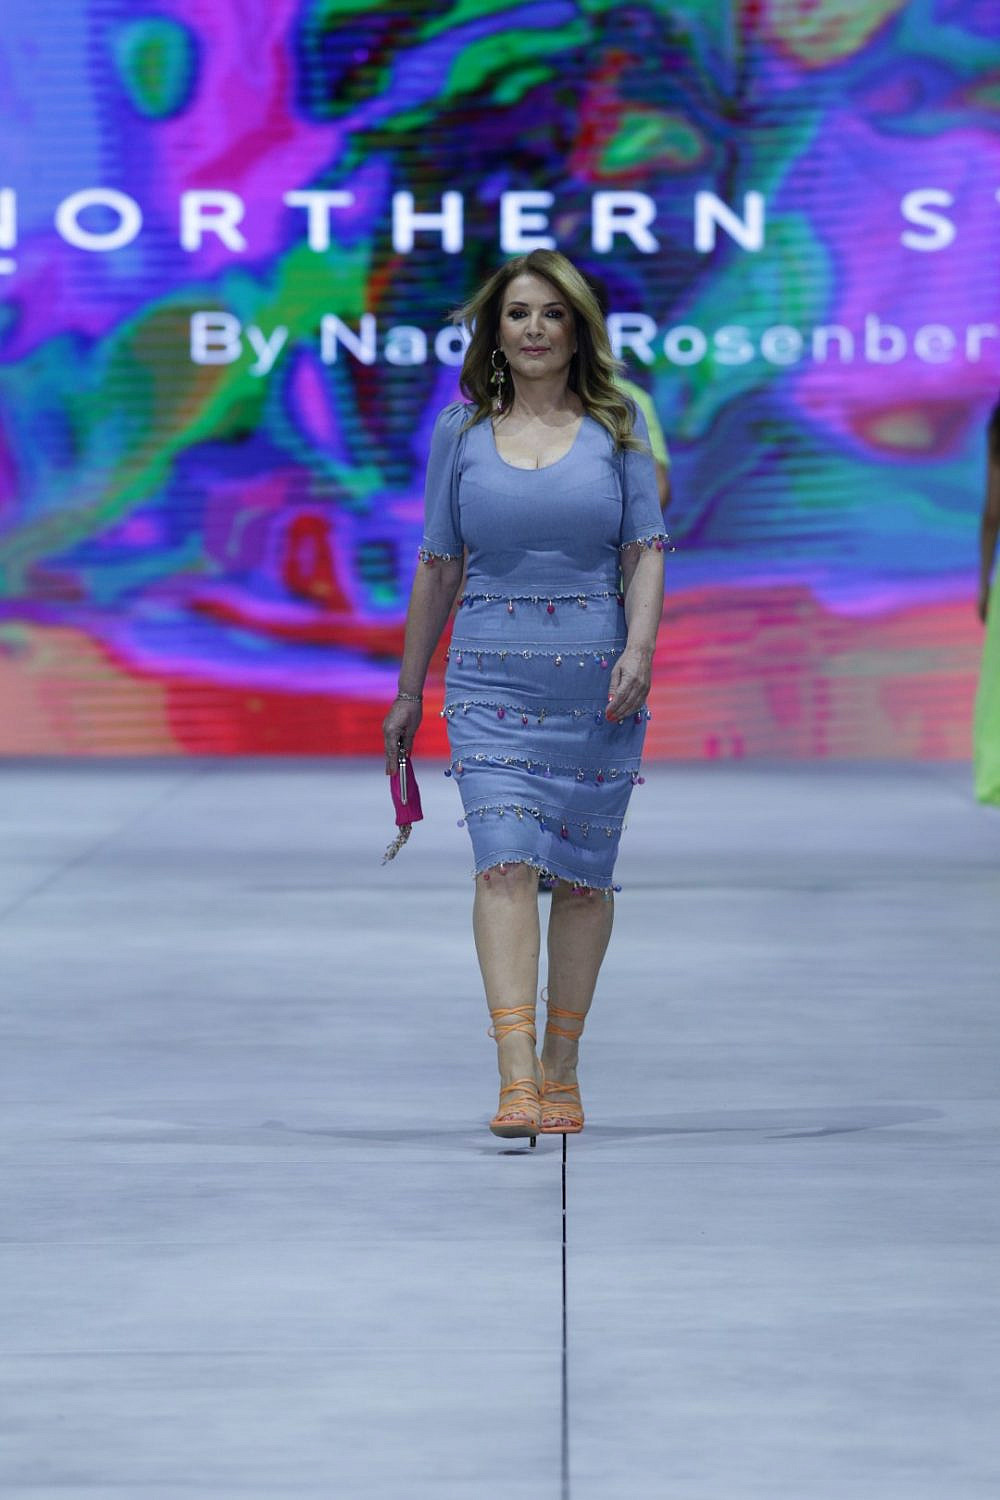 חנה רוזנברג, אימו של המעצב נדב רוזנברג, בתצוגה שלו בשבוע האופנה קורנית תל אביב | צילום אבי ולדמן